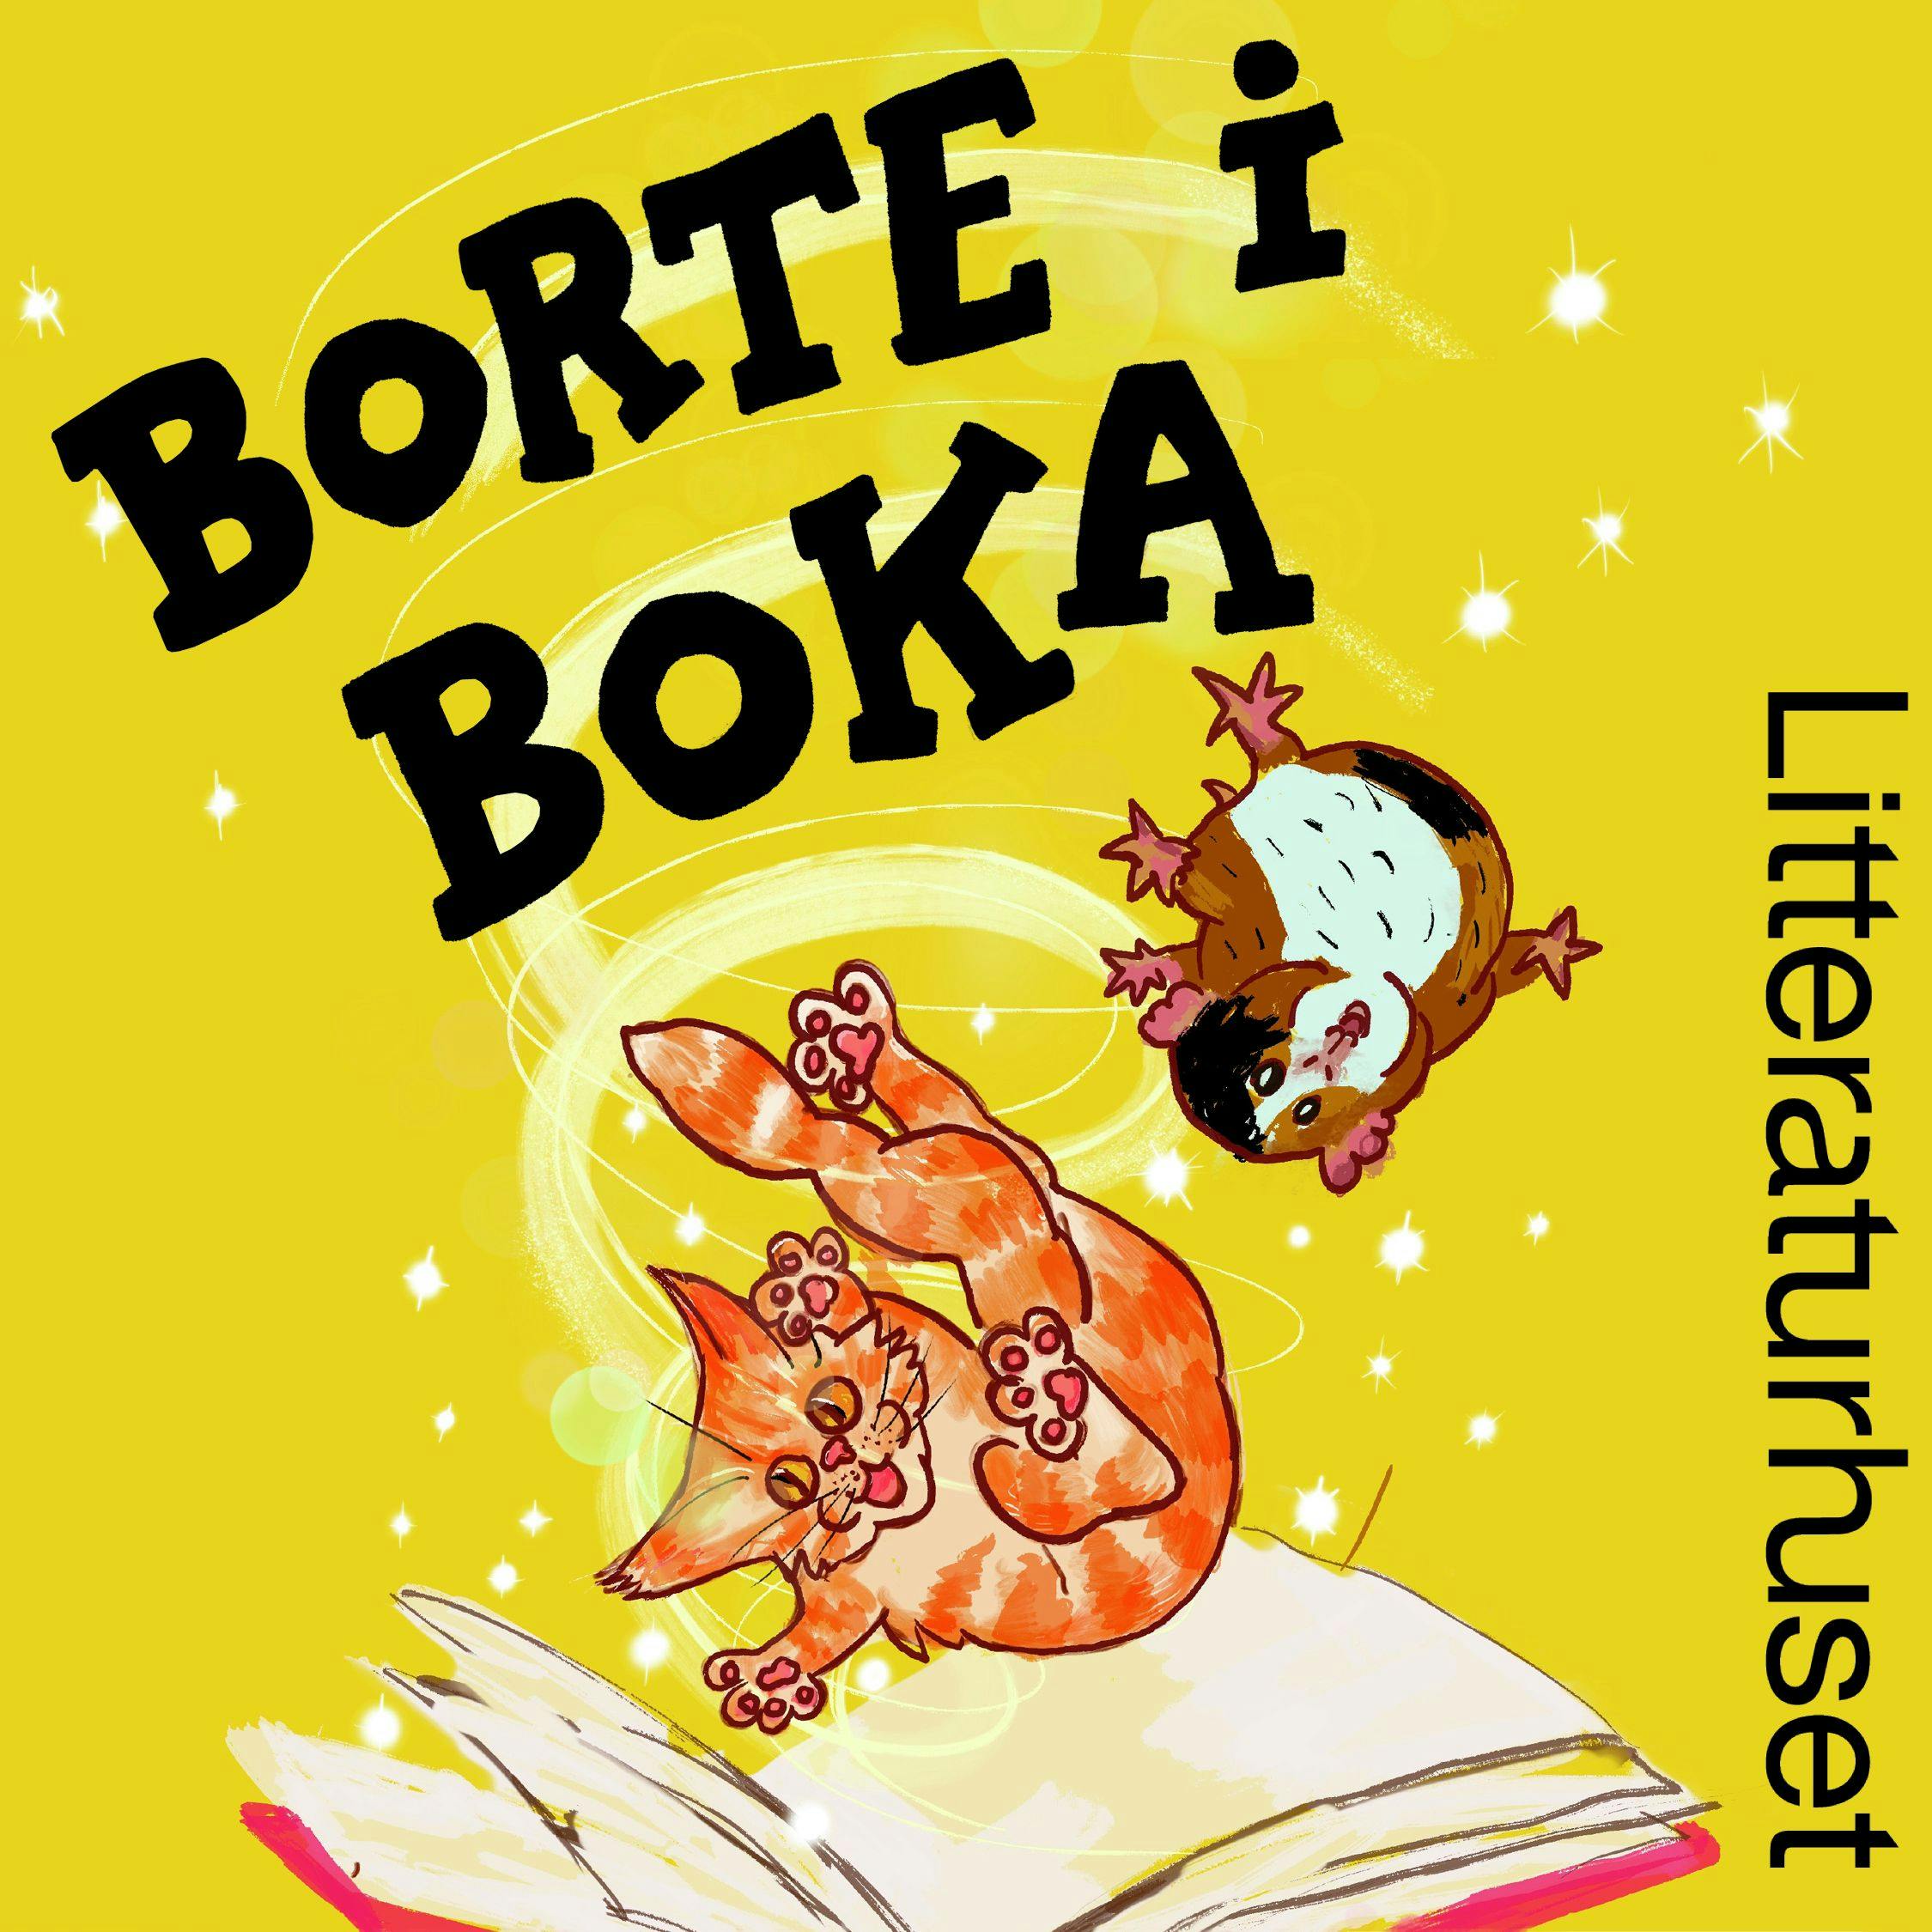 Cover for podkasten Borte i boka, med illustrasjon av karakterene Martin og Gnurre